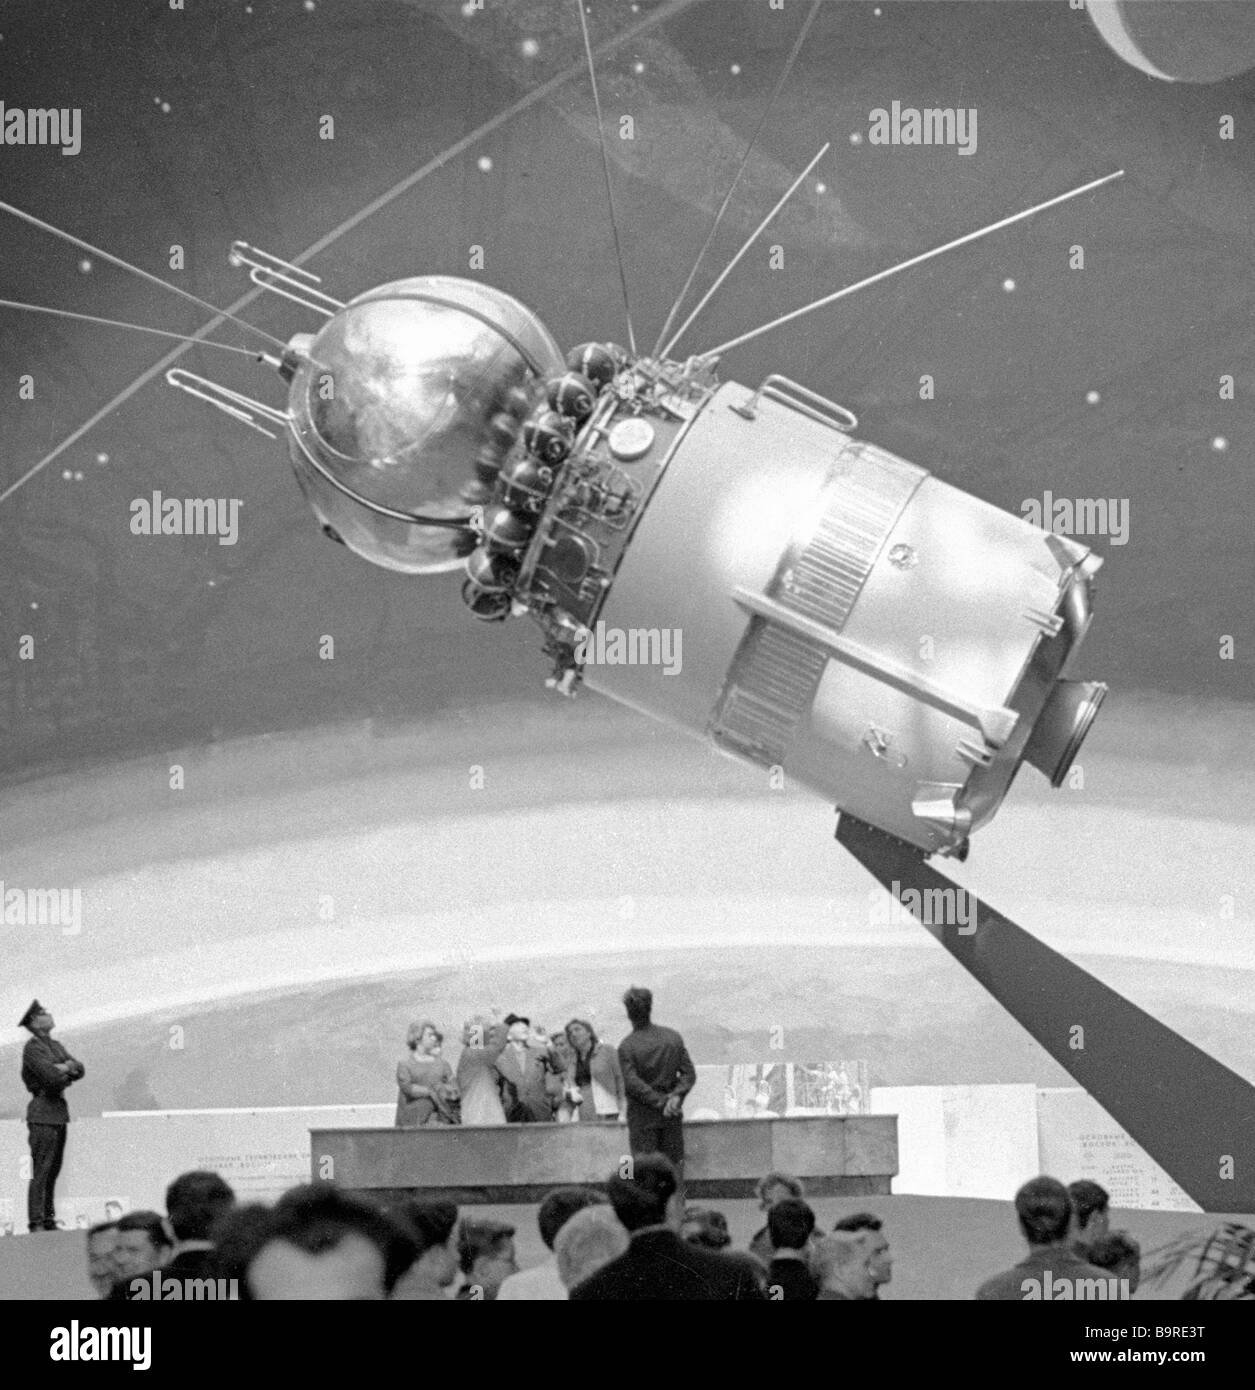 День космонавтики первый спутник. Первый в мире многоместный космический корабль Восход-1. Восход-2 космический корабль Леонов. Восход космический корабль 1964. Космический аппарат Гагарина Восток-1.